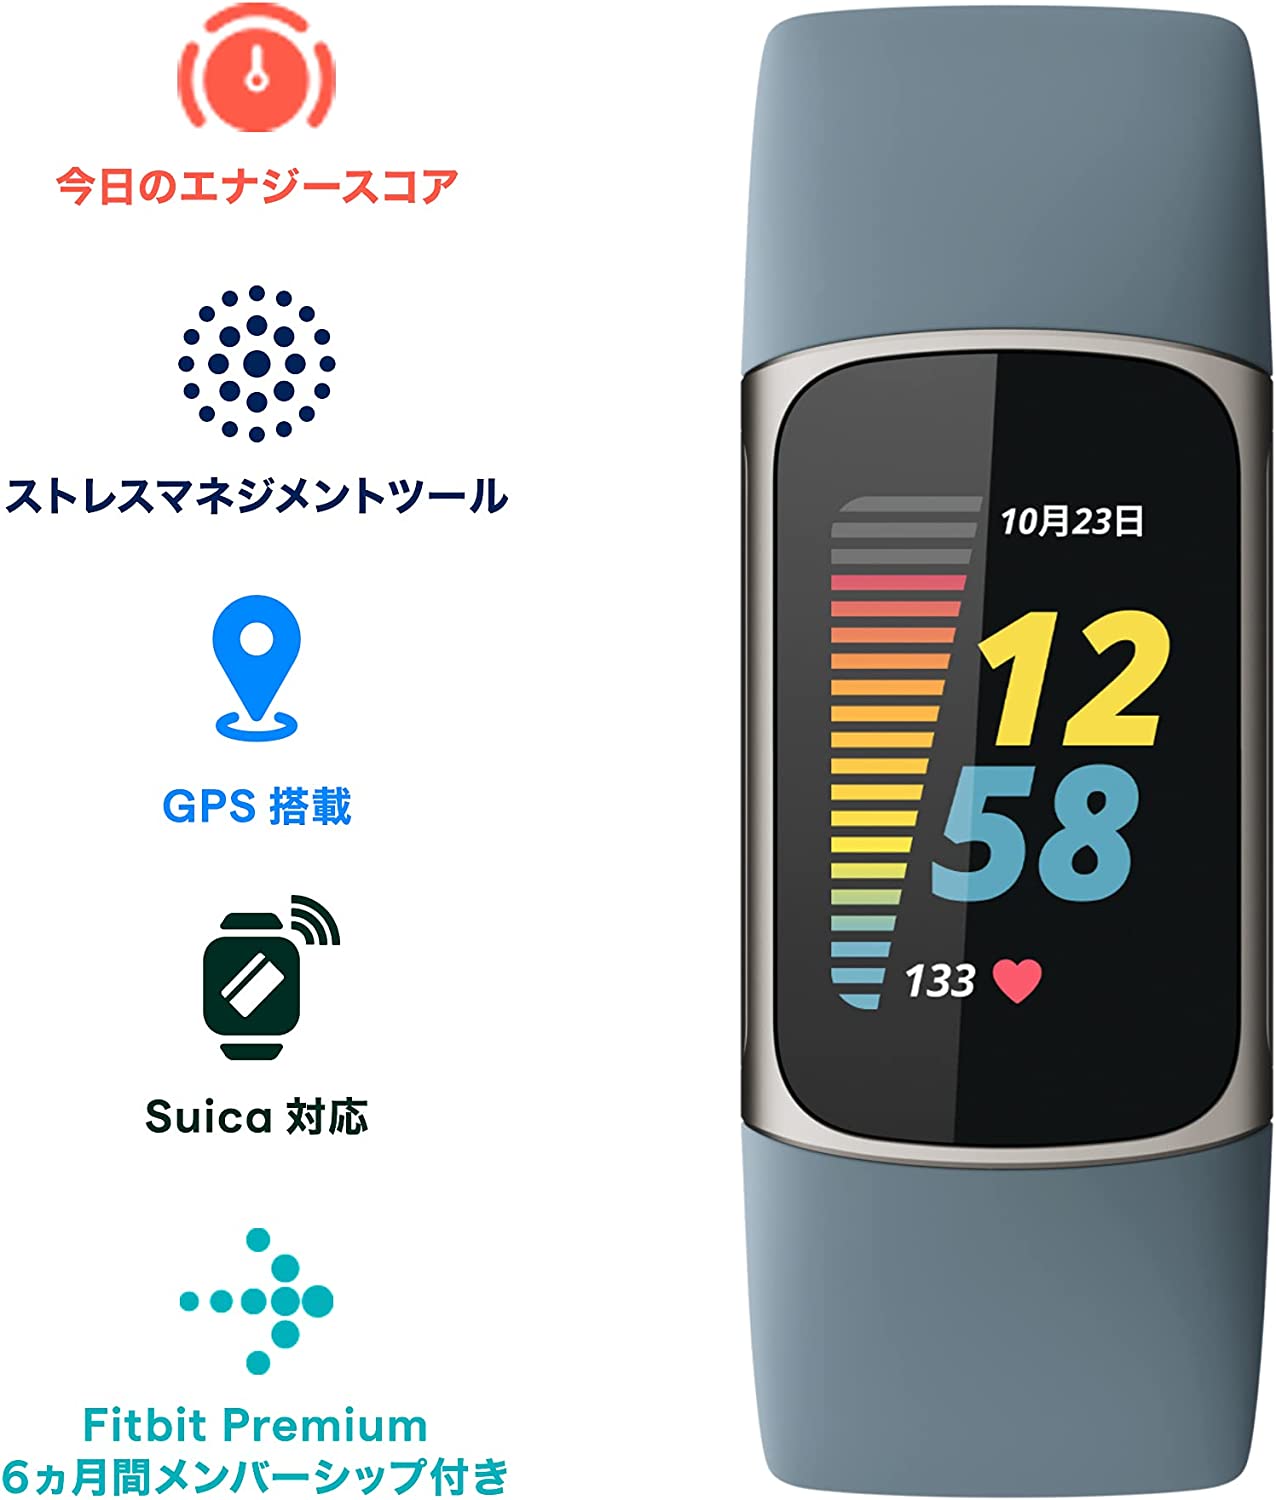 Fitbit Charge 5 スチールブルー プラチナ フィットビット fitbit スマートウォッチ 本体 活動量計 フィットネストラッカー  心拍数 日本正規品:Fitbitオフィシャルストア通販 | JRE MALLショッピング | JRE POINTが貯まる・使える